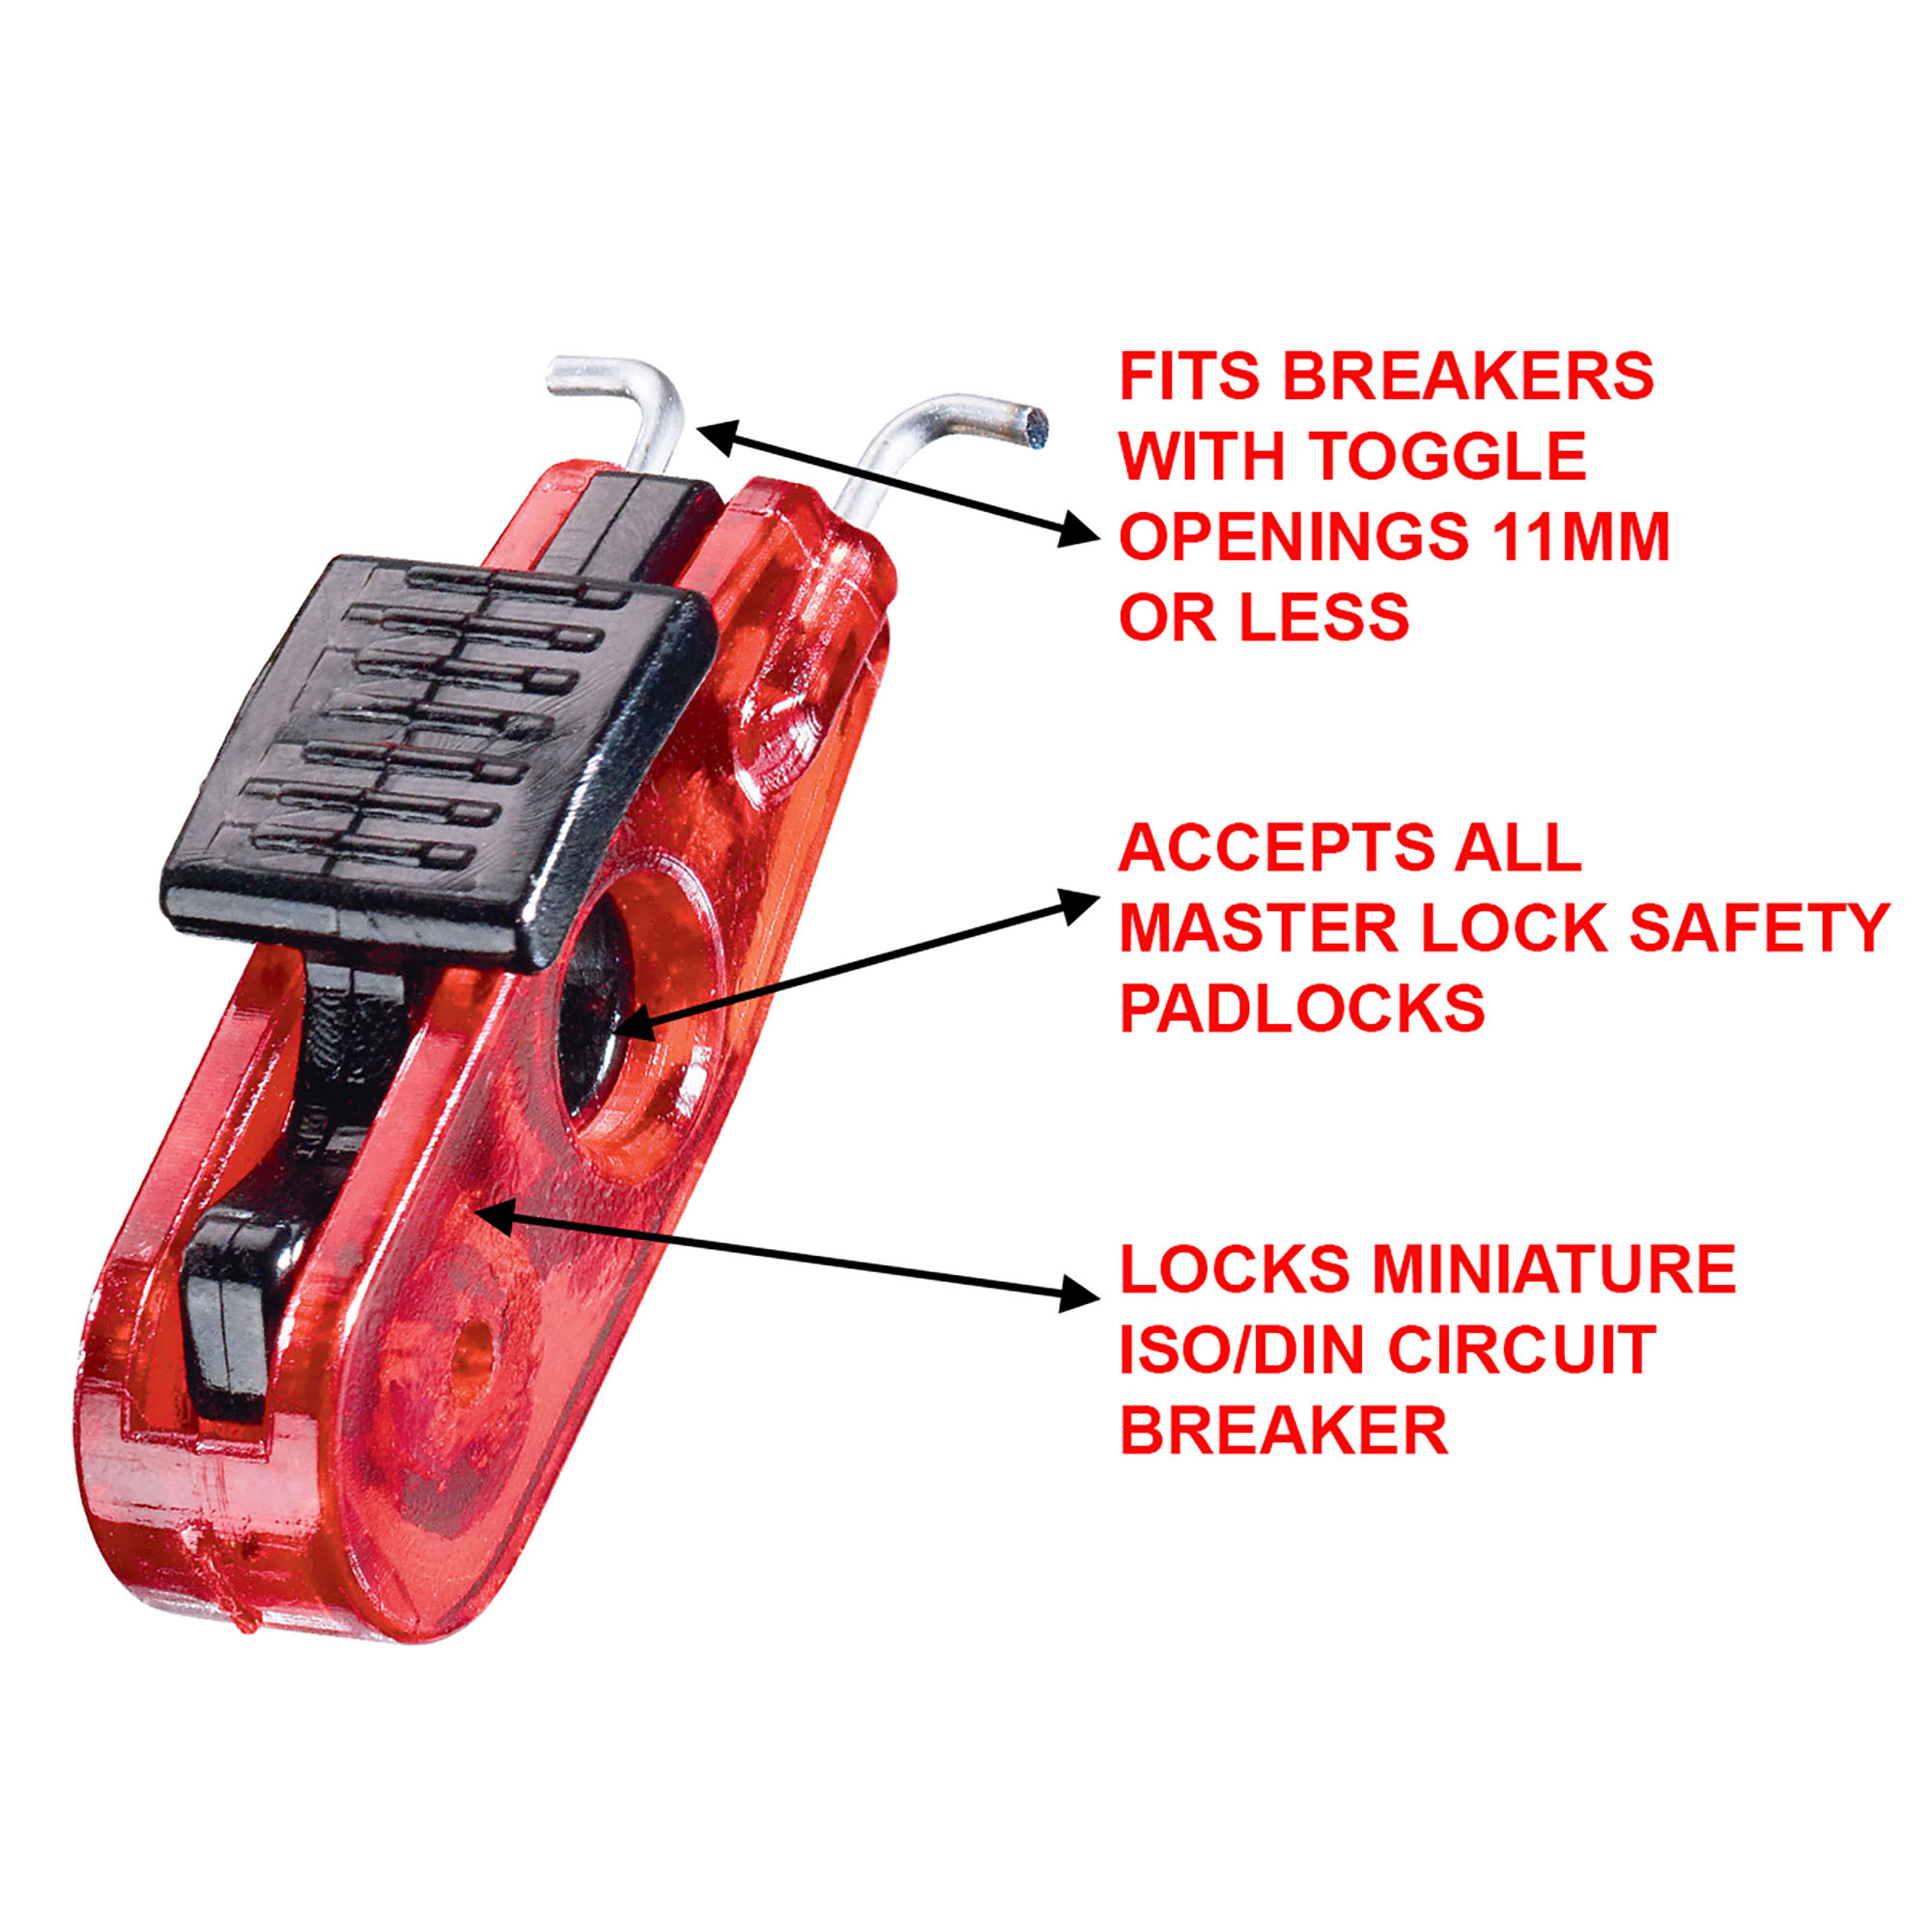 Mini Bloque disjoncteur pour Consignation Electrique et Interrupteur Standard ISO/DIN-Master Lock- Preventimark